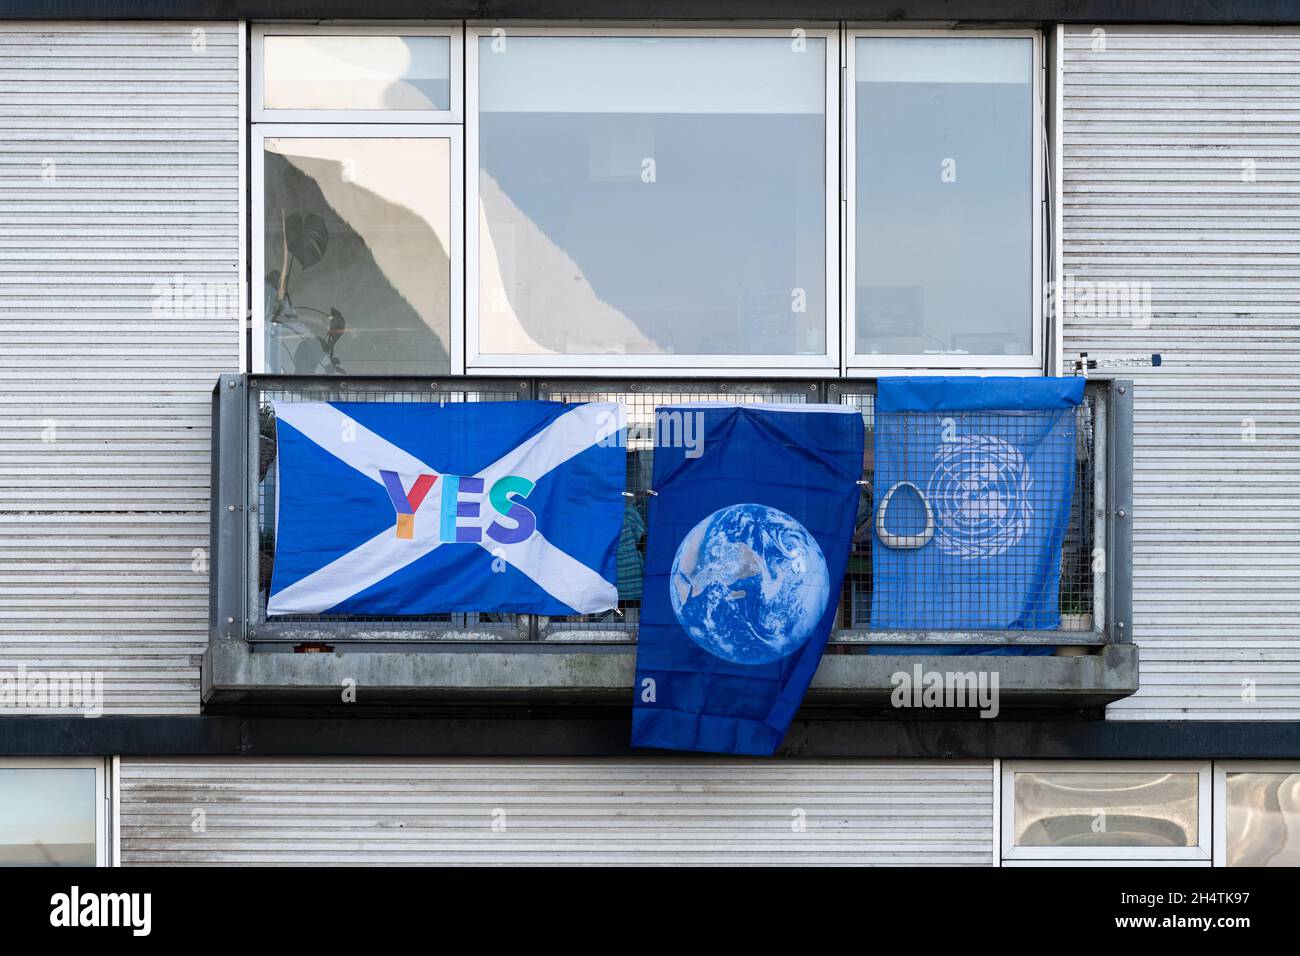 Drapeaux sur le balcon de l'appartement surplombant le lieu de la COP26 SEC - drapeau écossais d'indépendance, drapeau des Nations Unies, Glasgow, Écosse, Royaume-Uni Banque D'Images